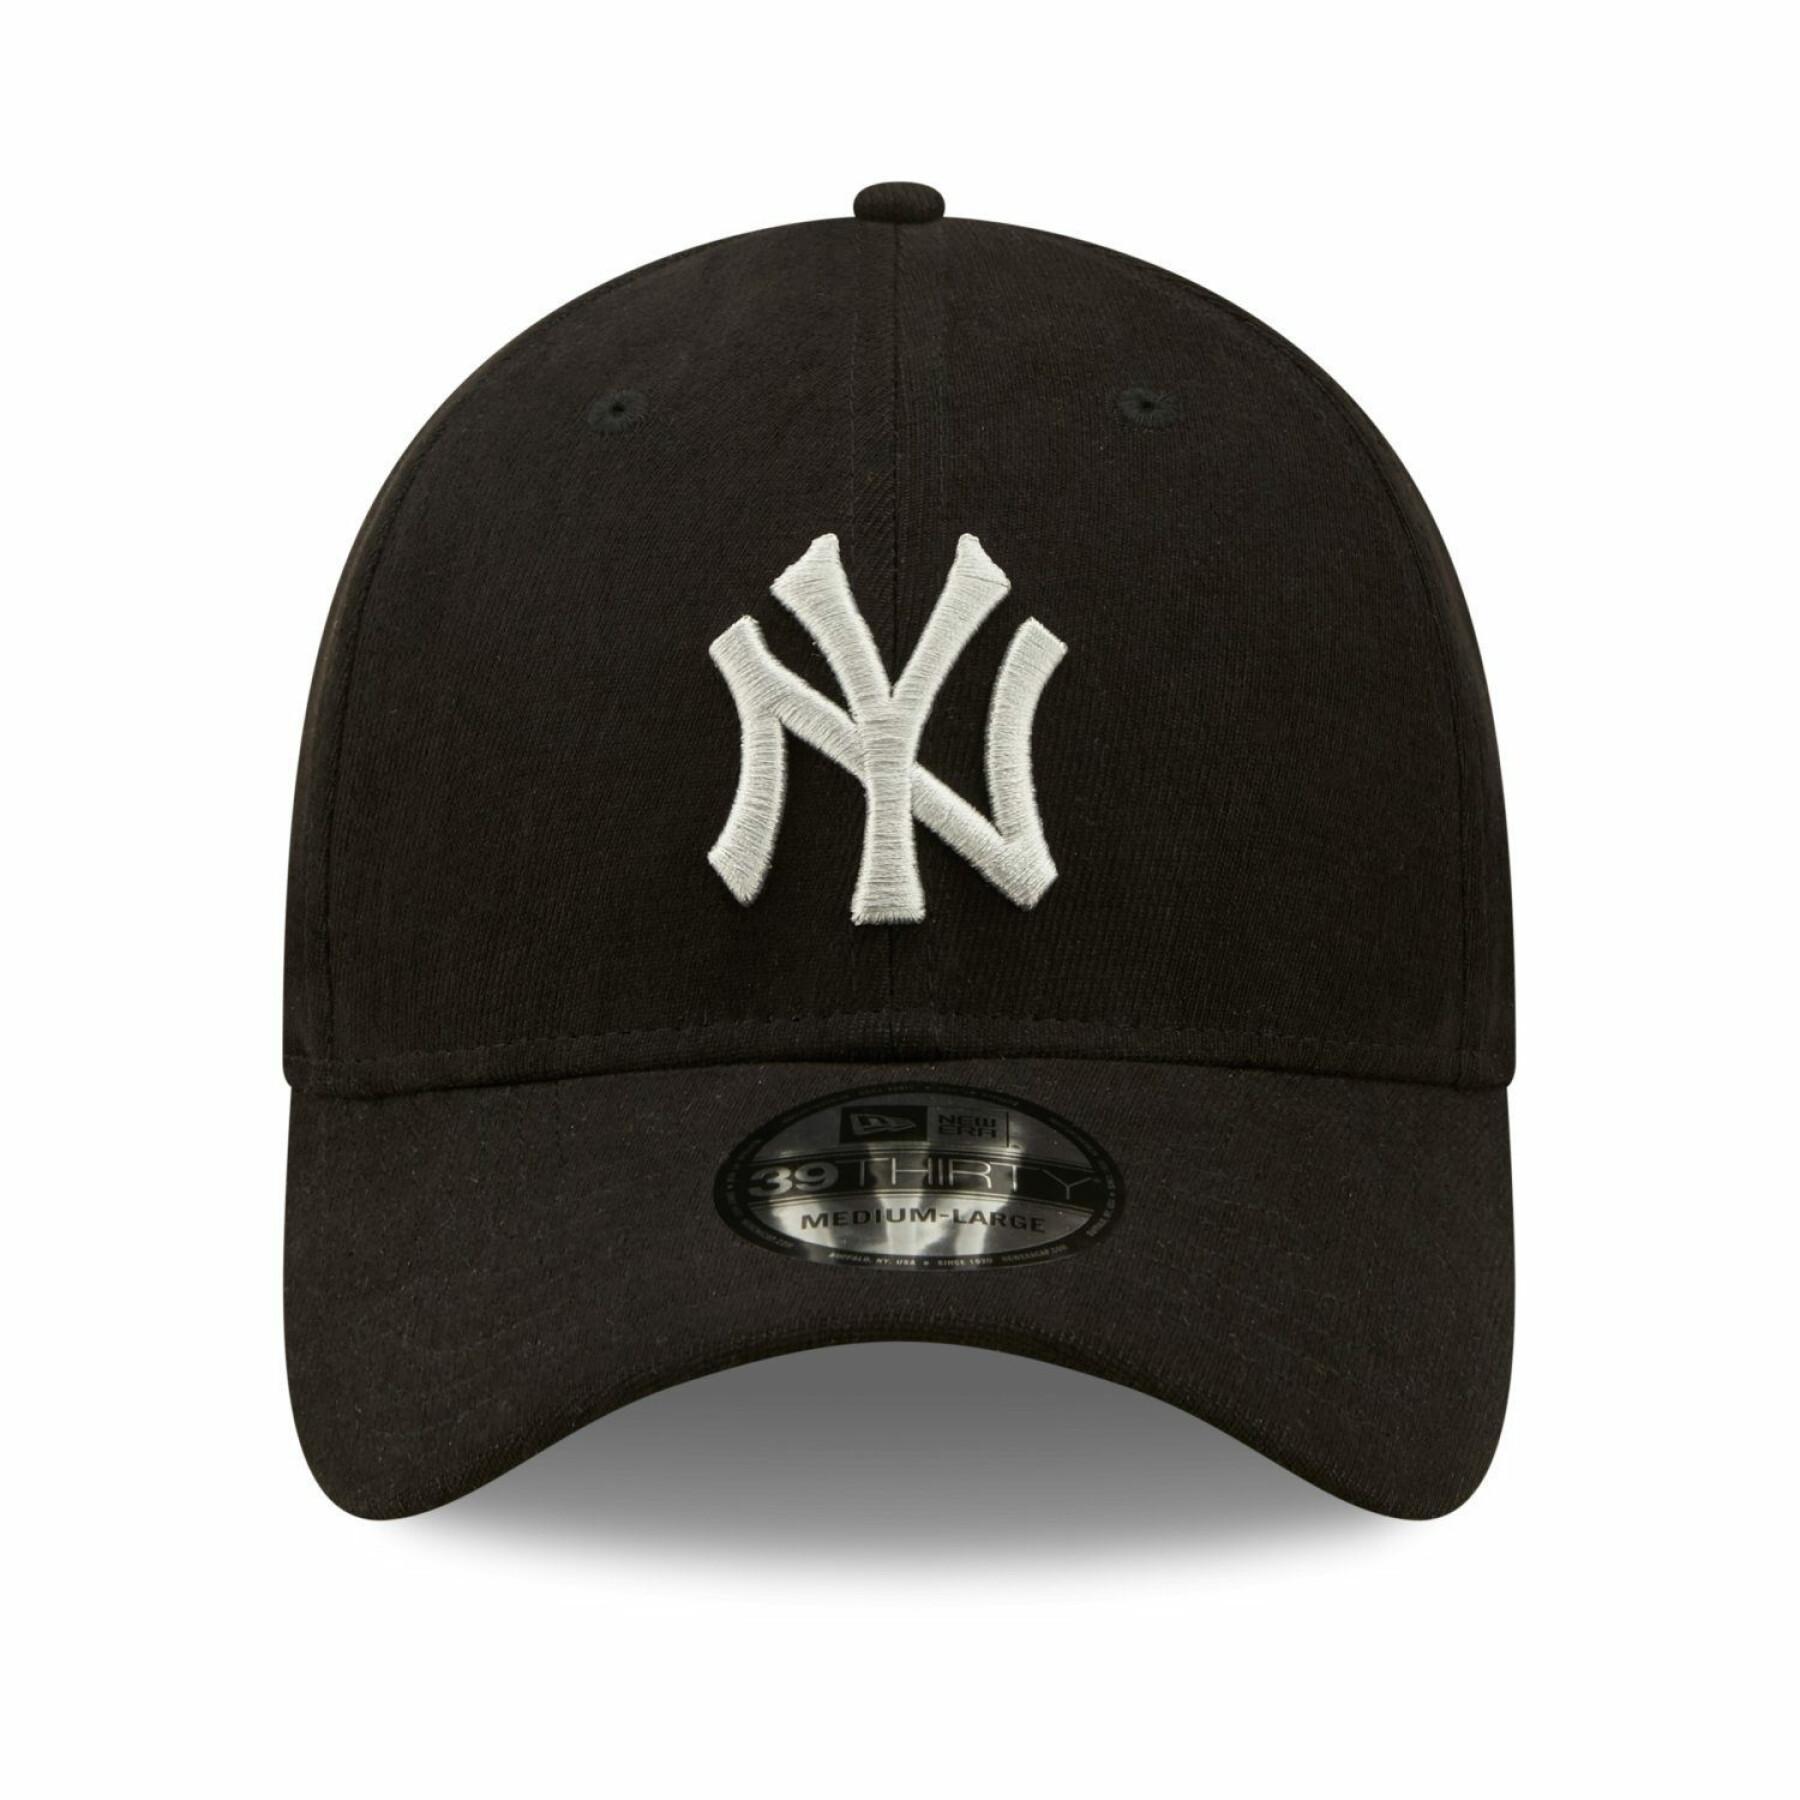 Mütze New York Yankees Comfort 39Thirty